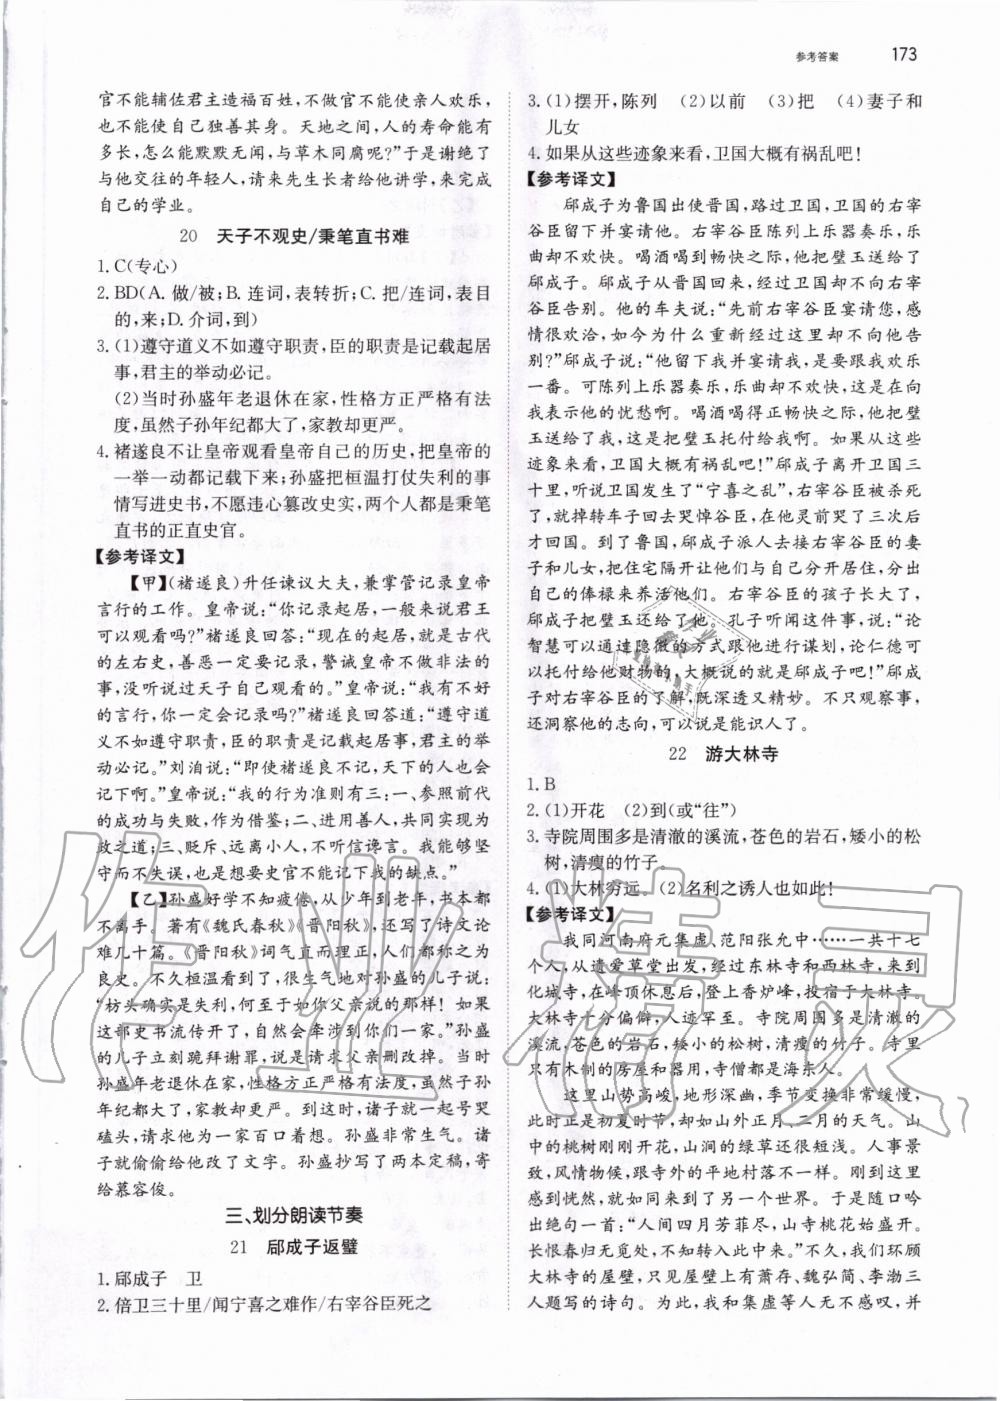 2019年锐阅读初中语文阅读训练5合1中考 第19页